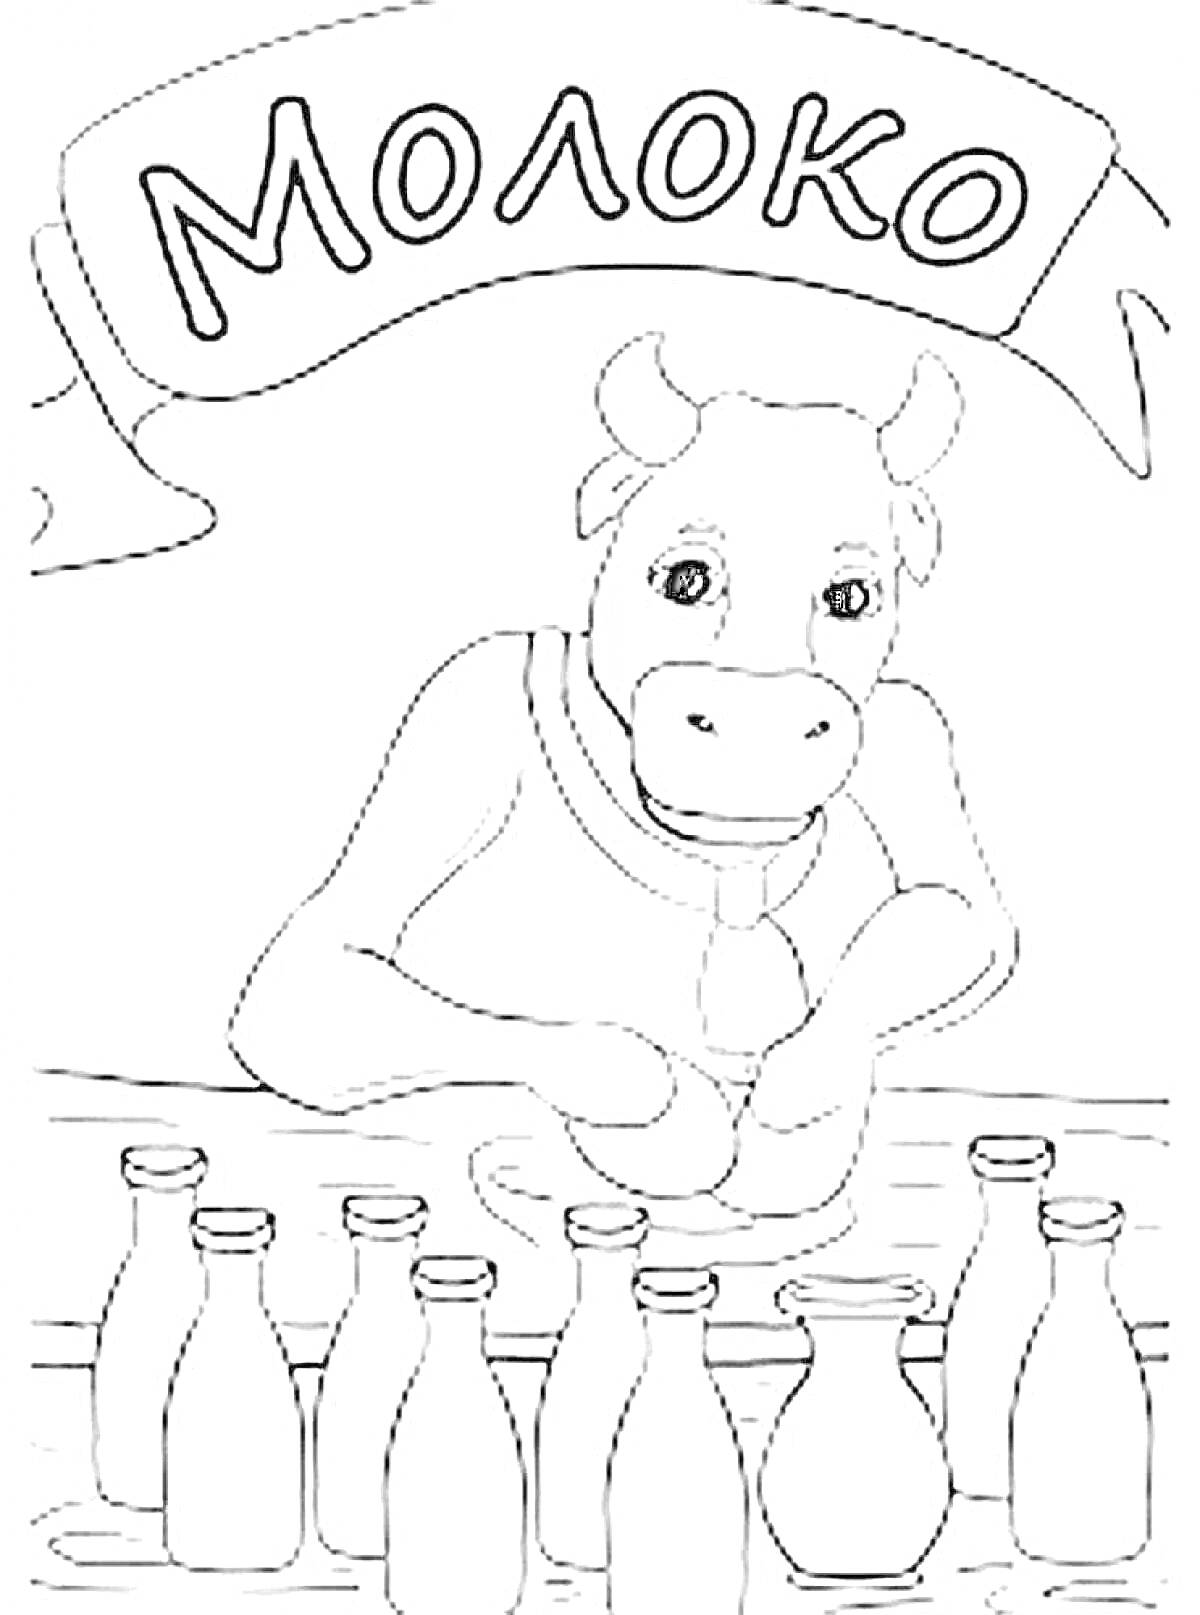 корова за прилавком молока, бутылки с молоком, надпись 